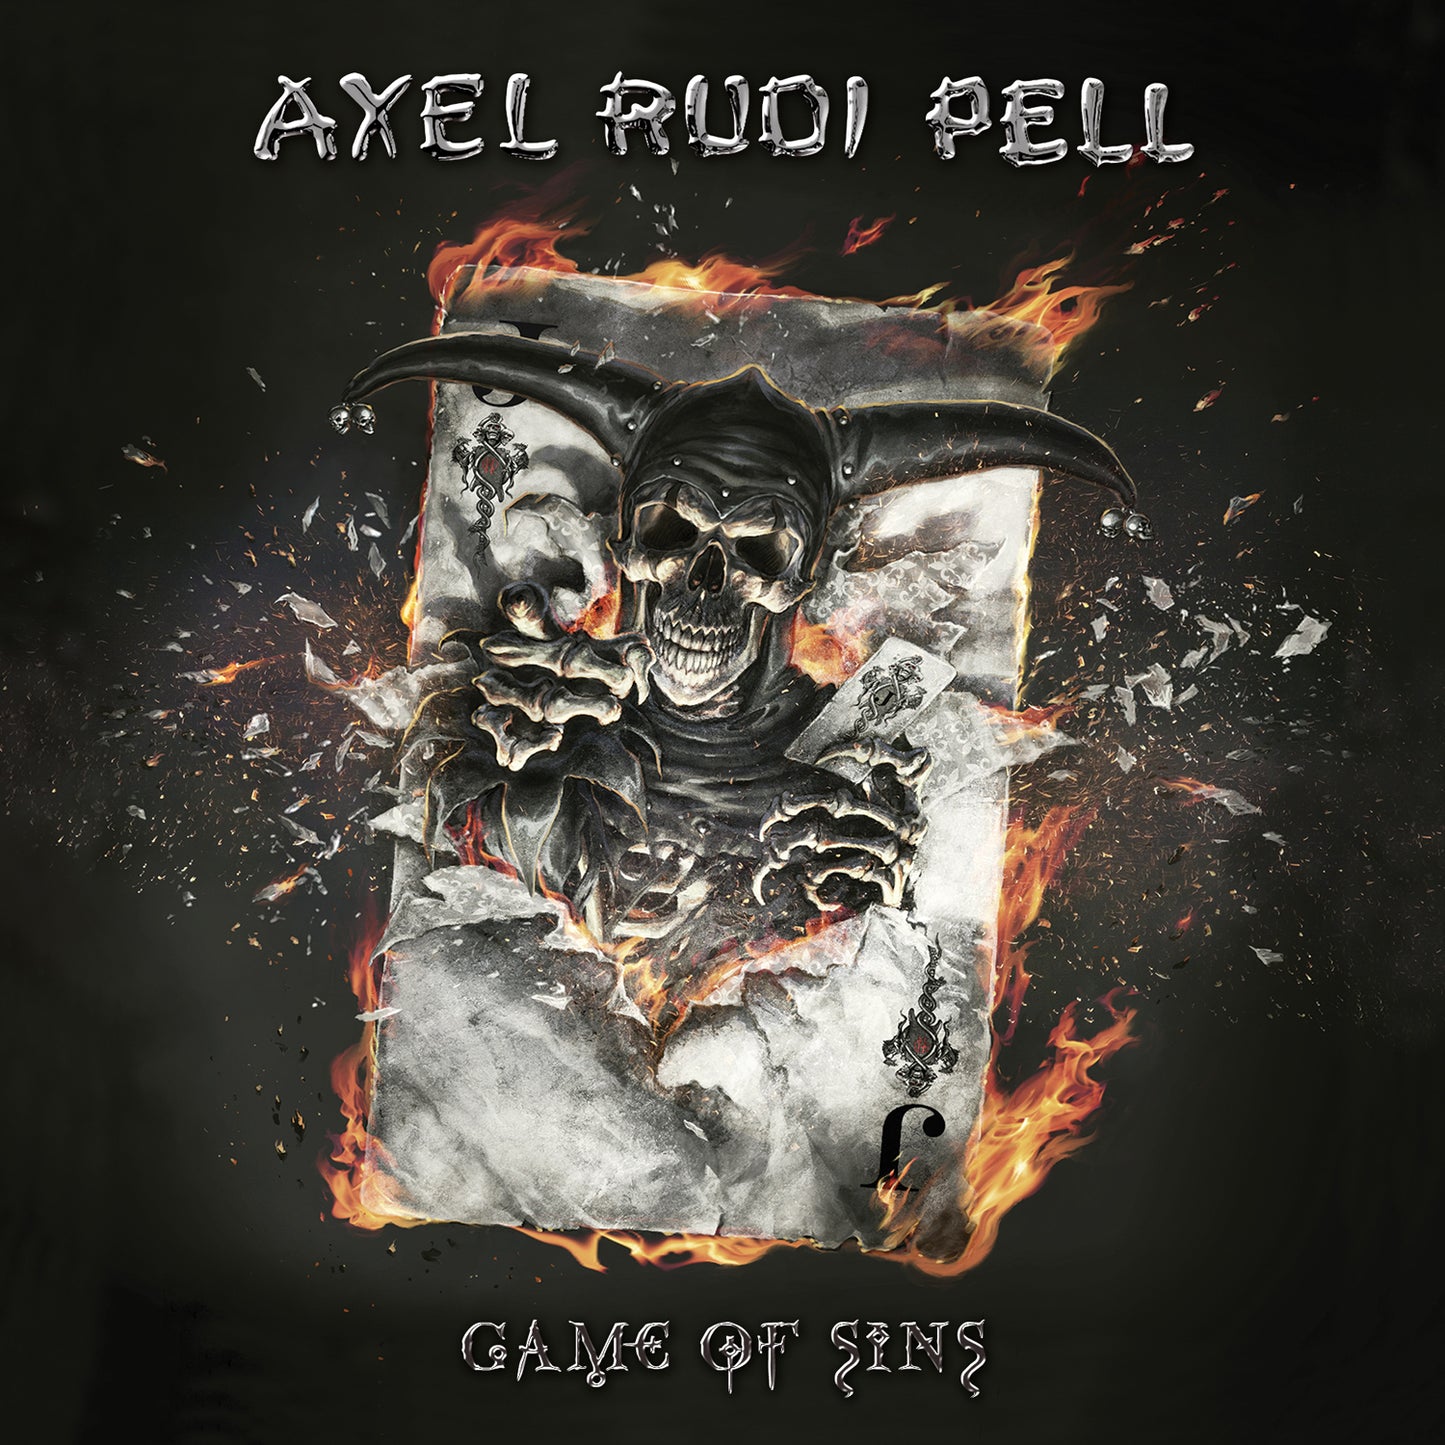 Axel Rudi Pell "Game Of Sins" CD